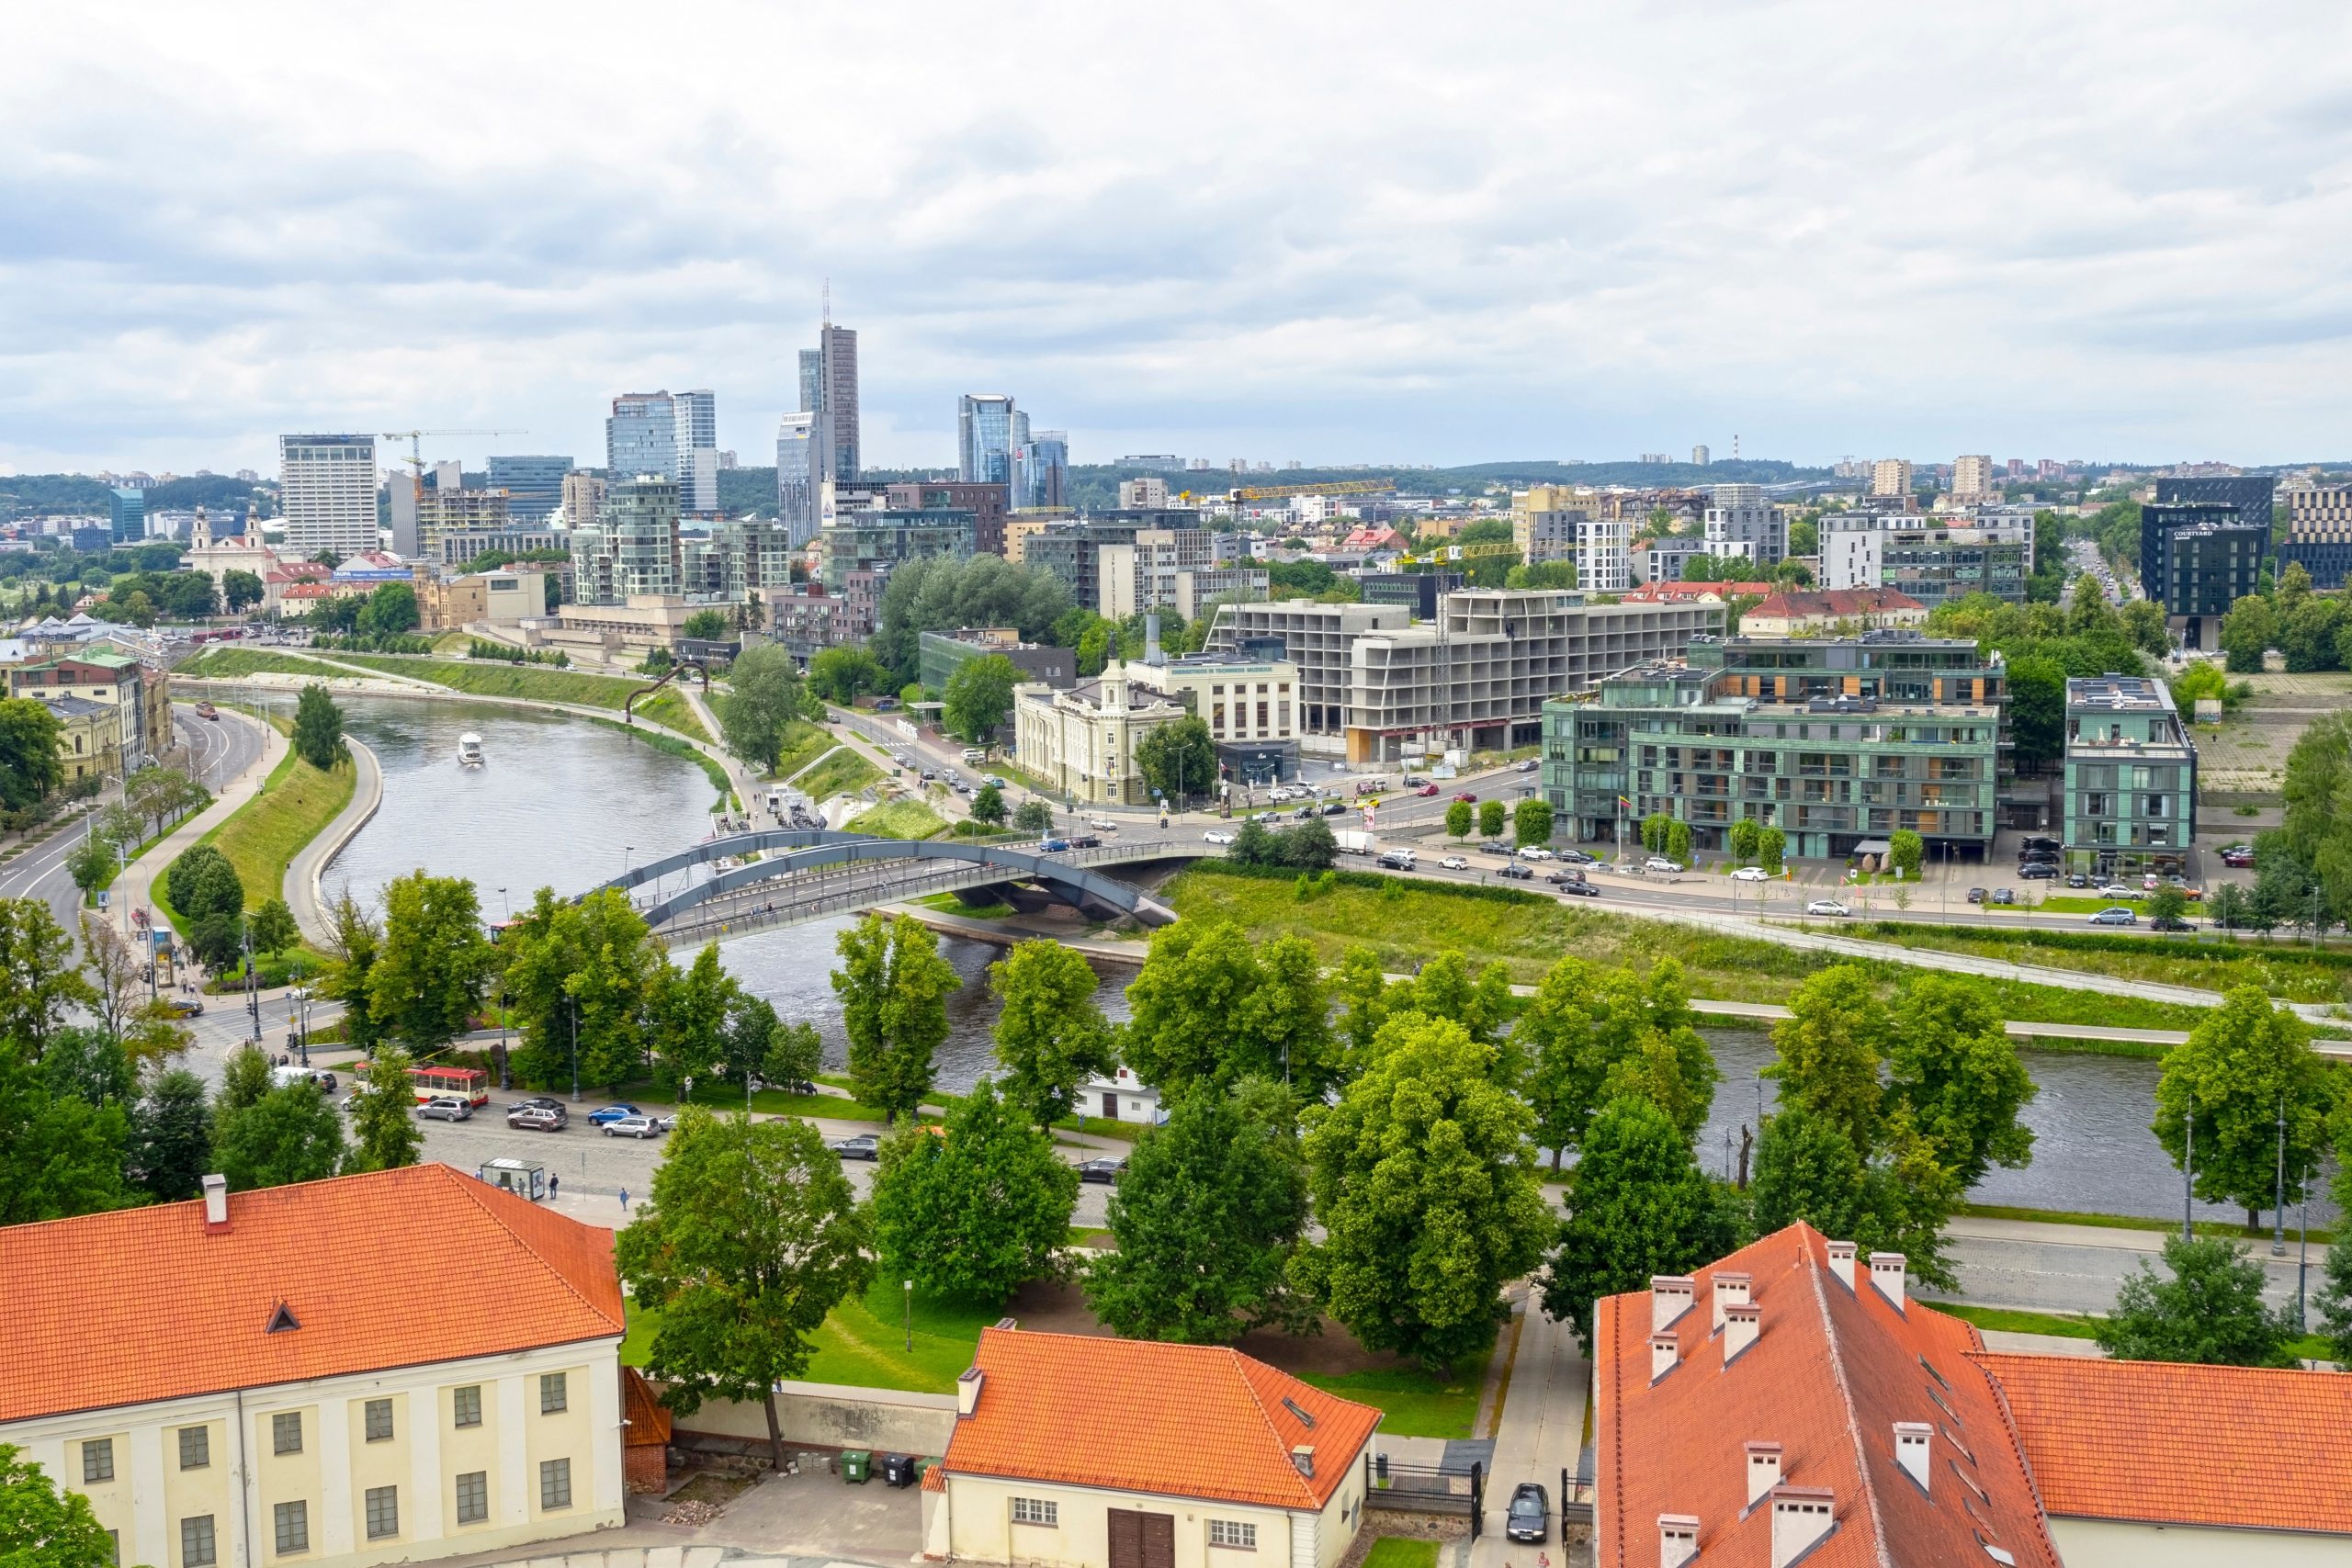 Šnipiškės Vilnius from above (Shutterstock)